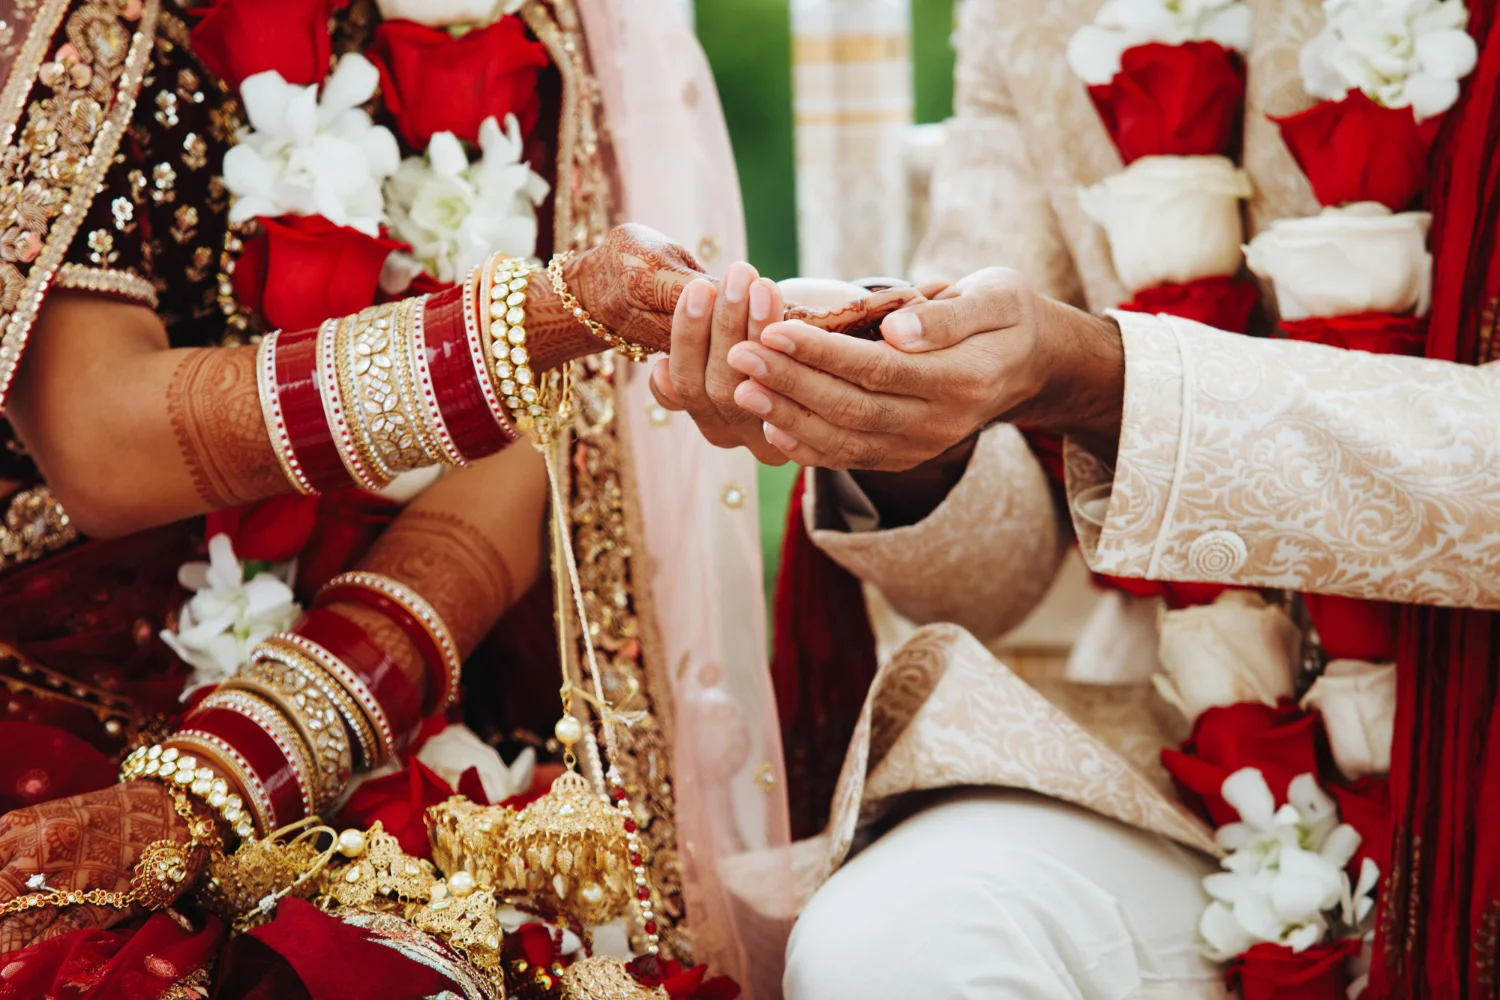 Inter caste marriage scheme